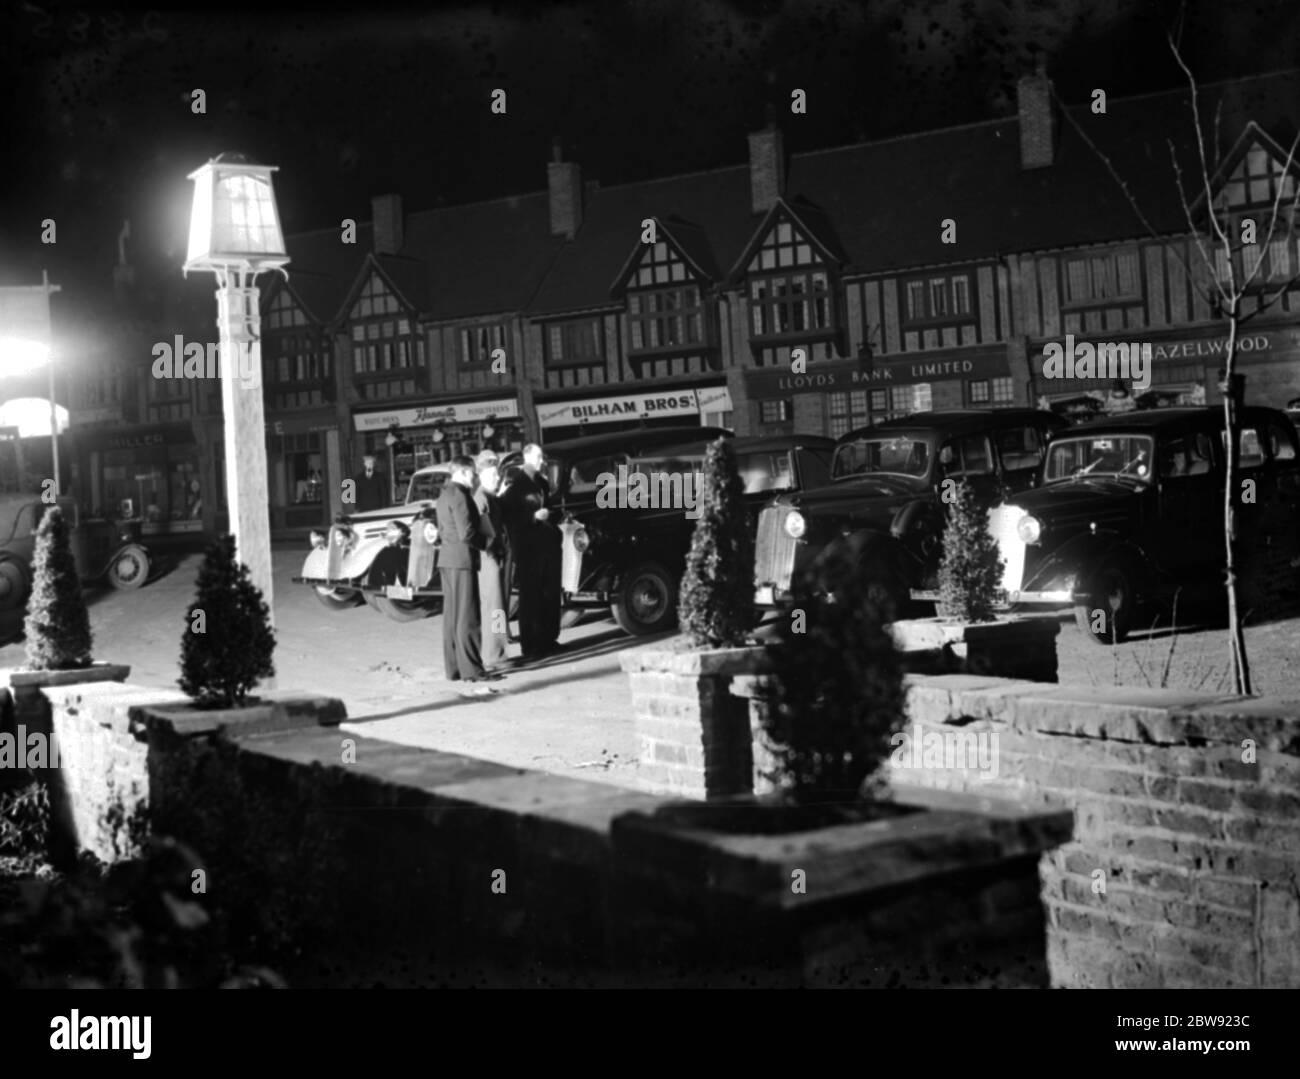 Una flota de coches vauxhall estacionados juntos en el Daylight Inn en Pettswood. 1936 Foto de stock